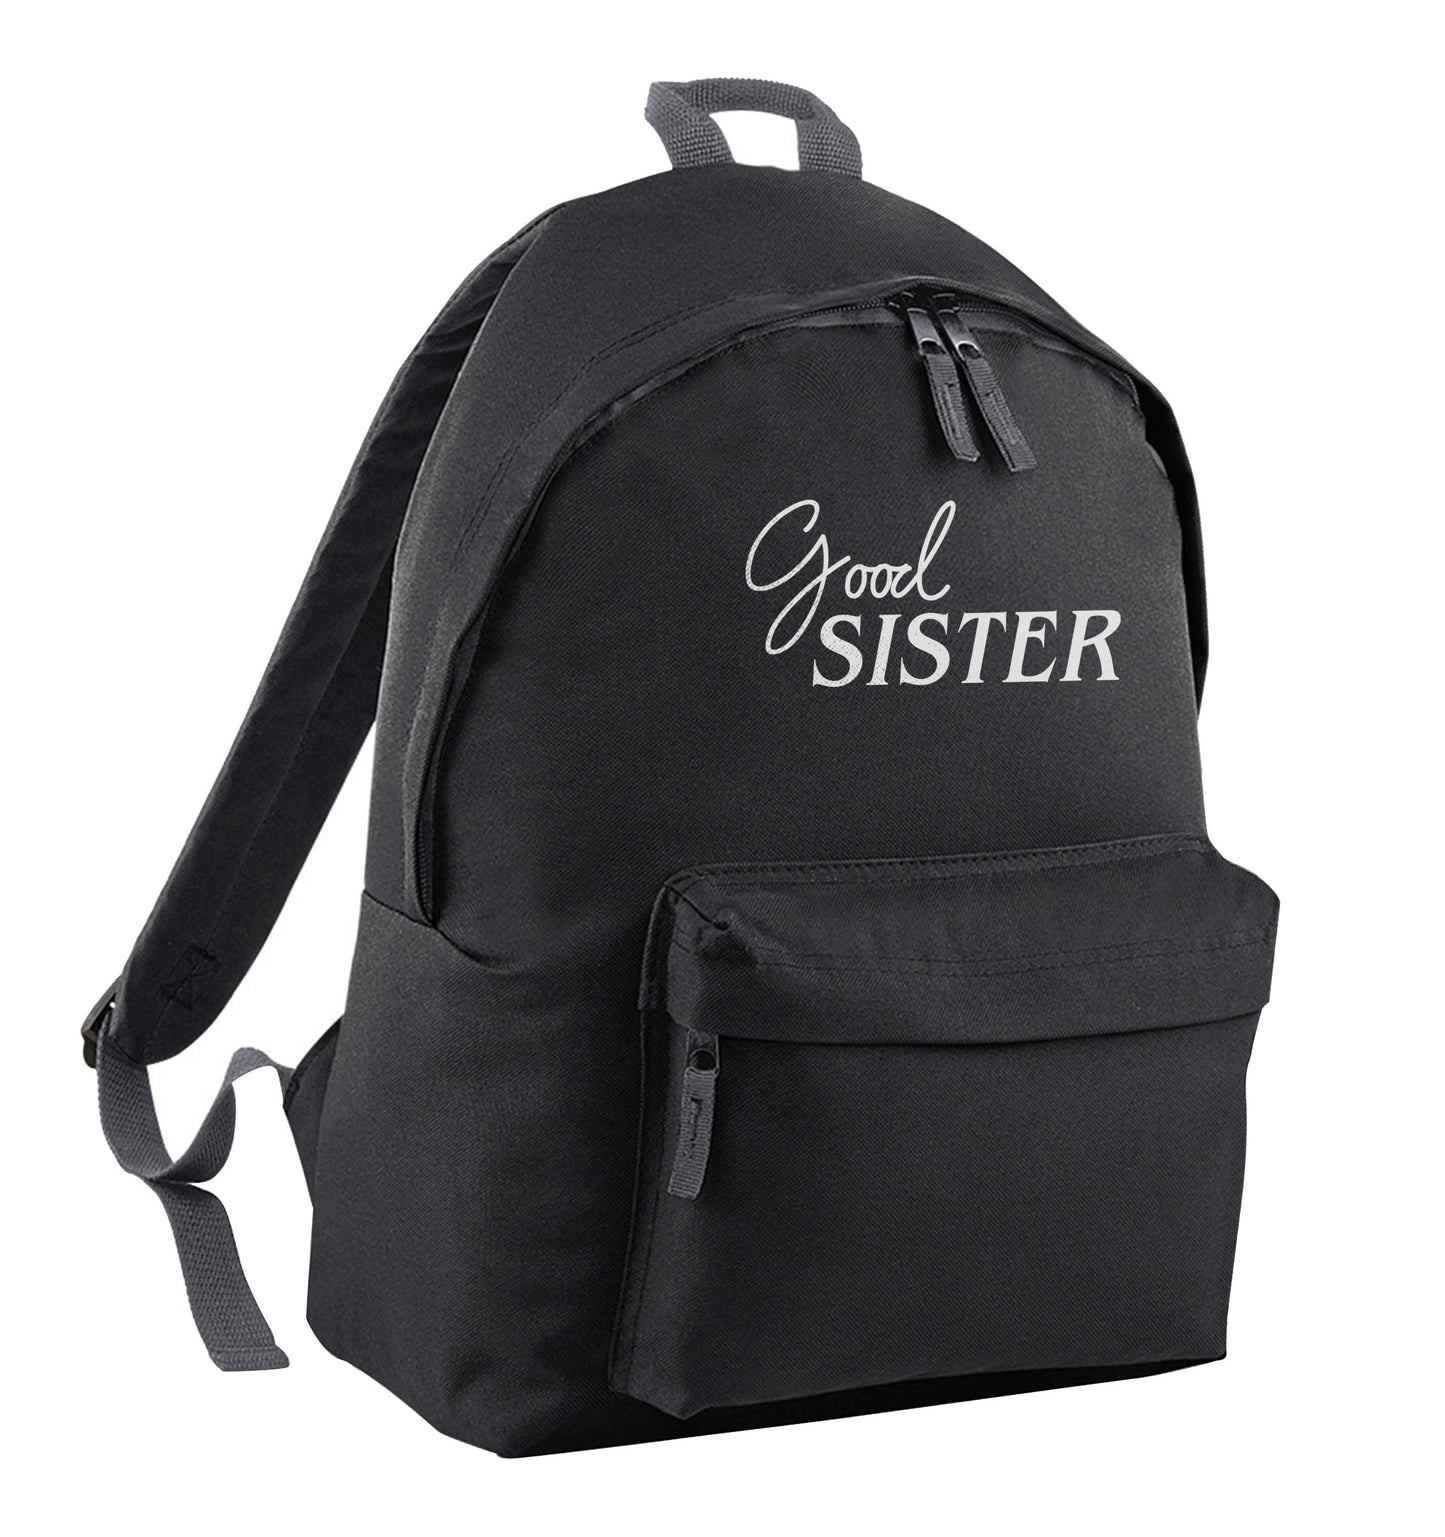 Good sister black children's backpack